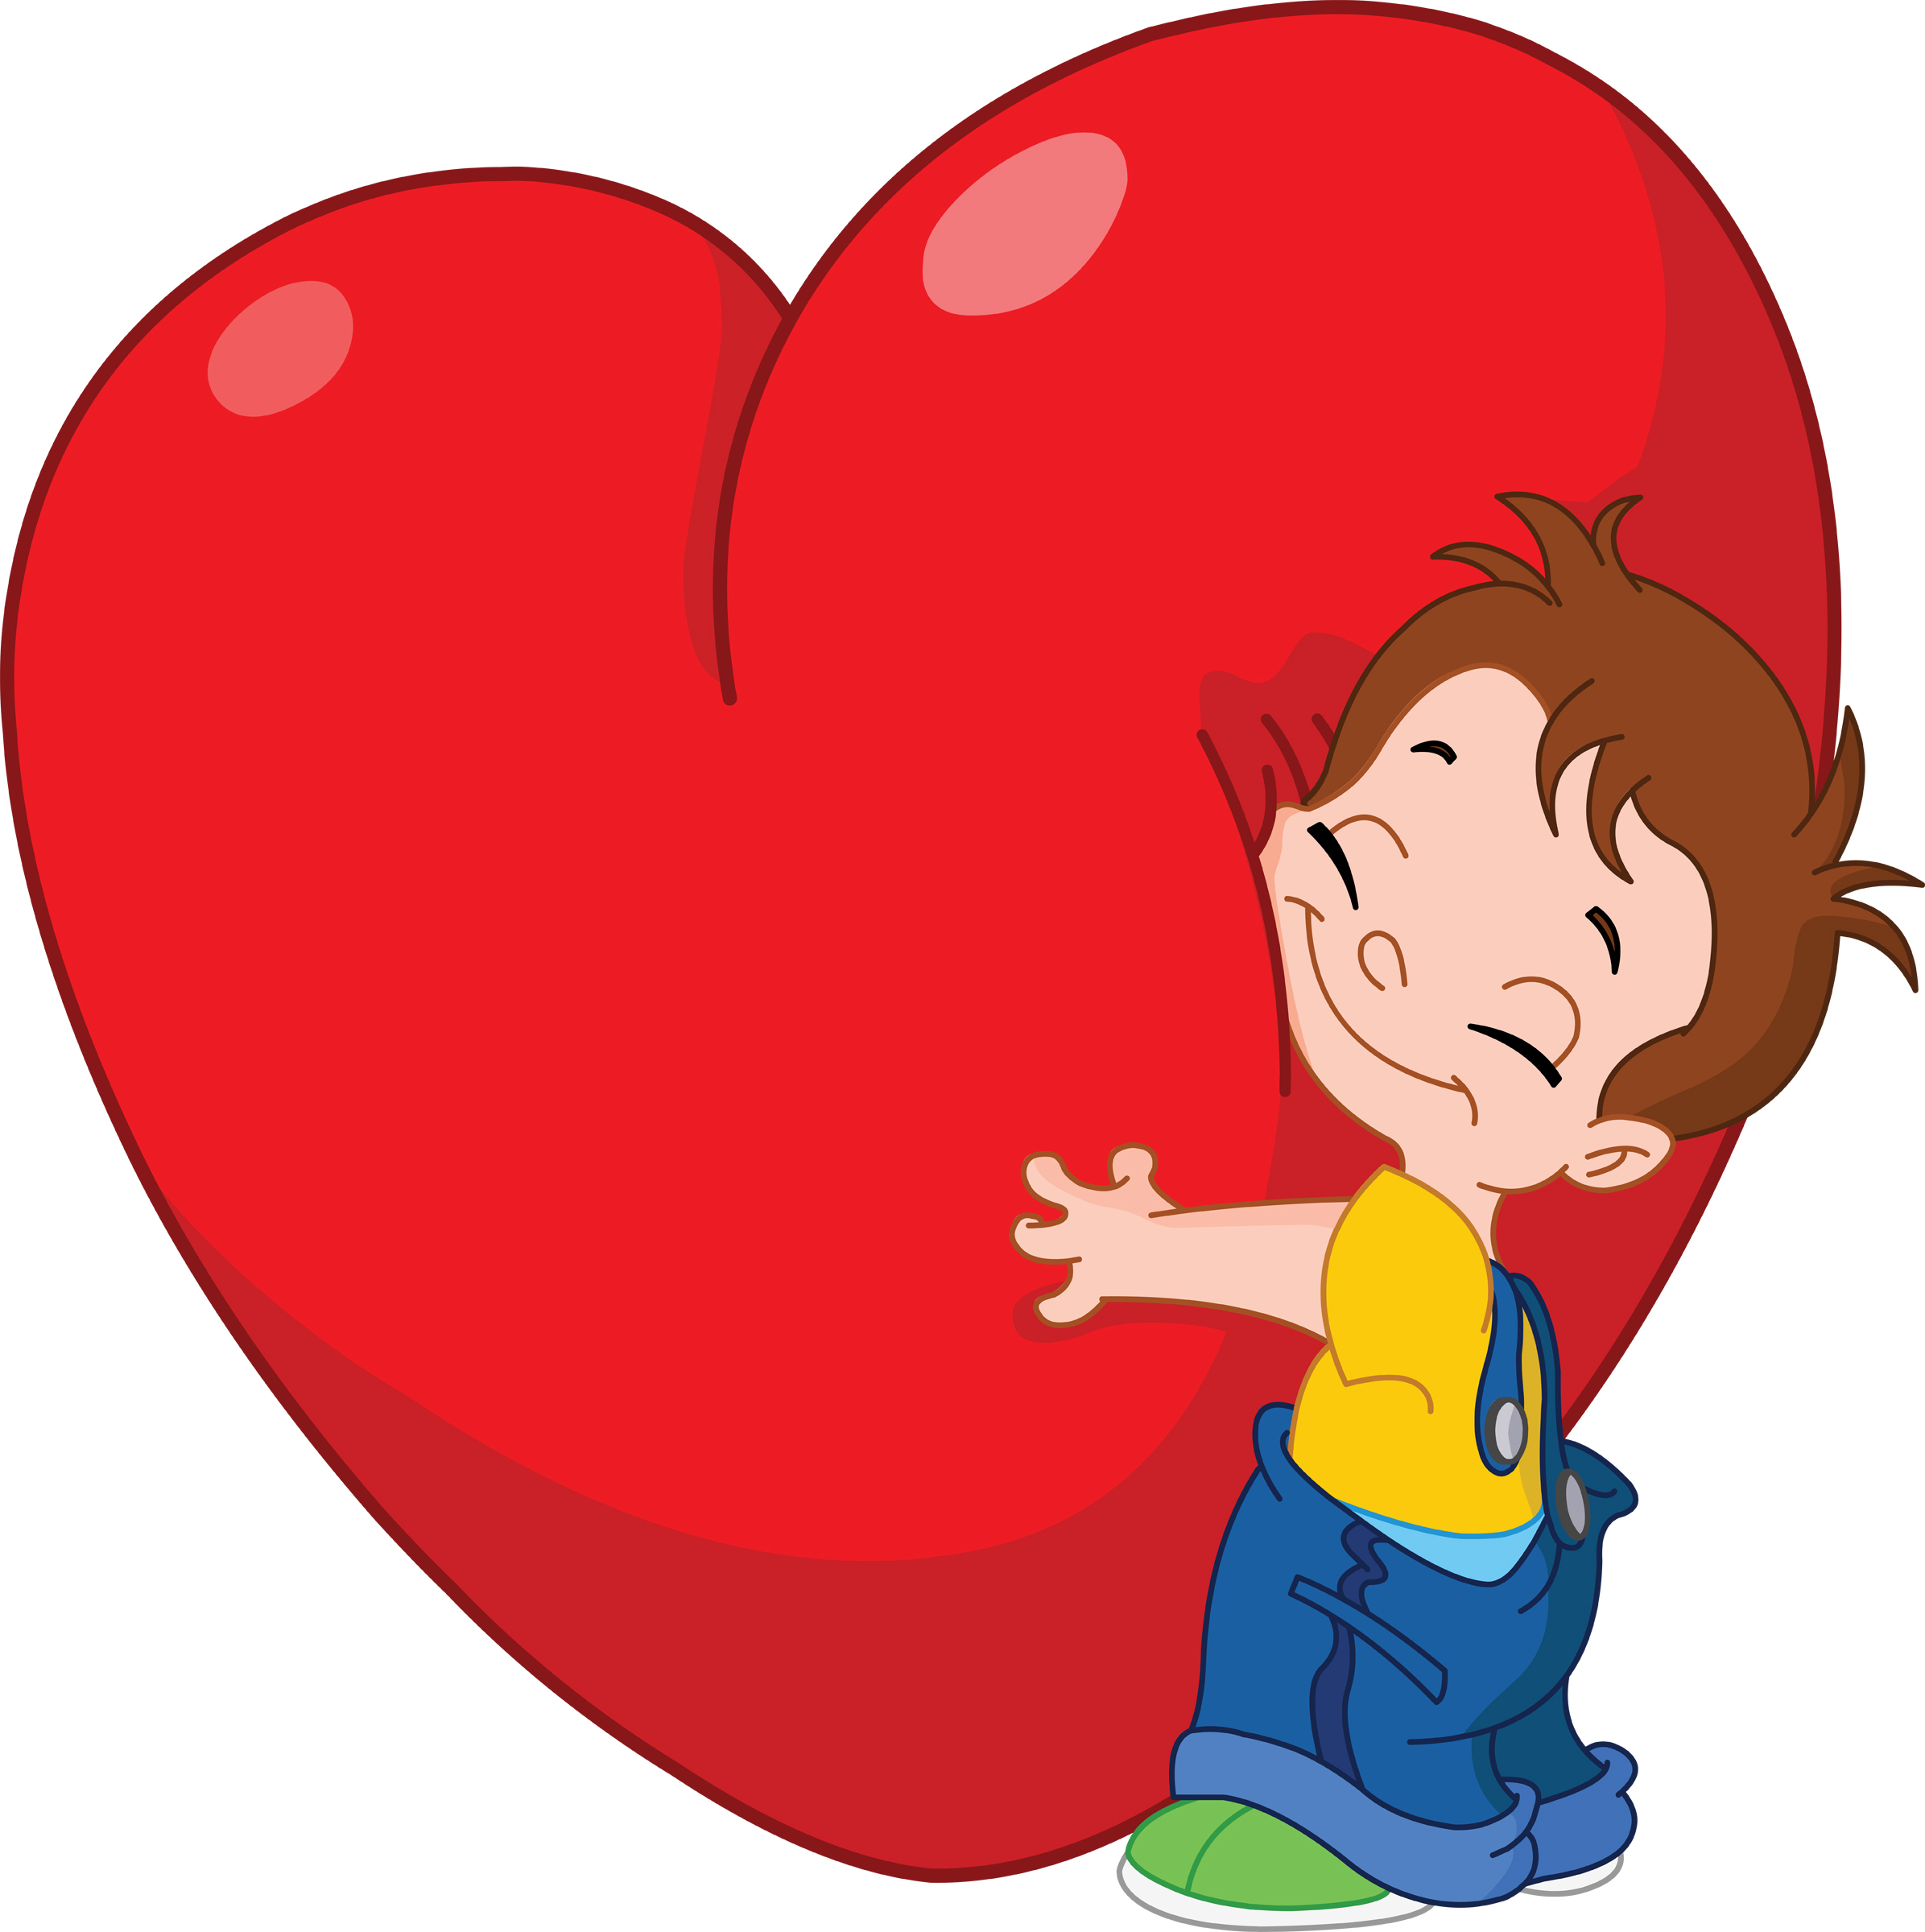 Boy hugging a heart